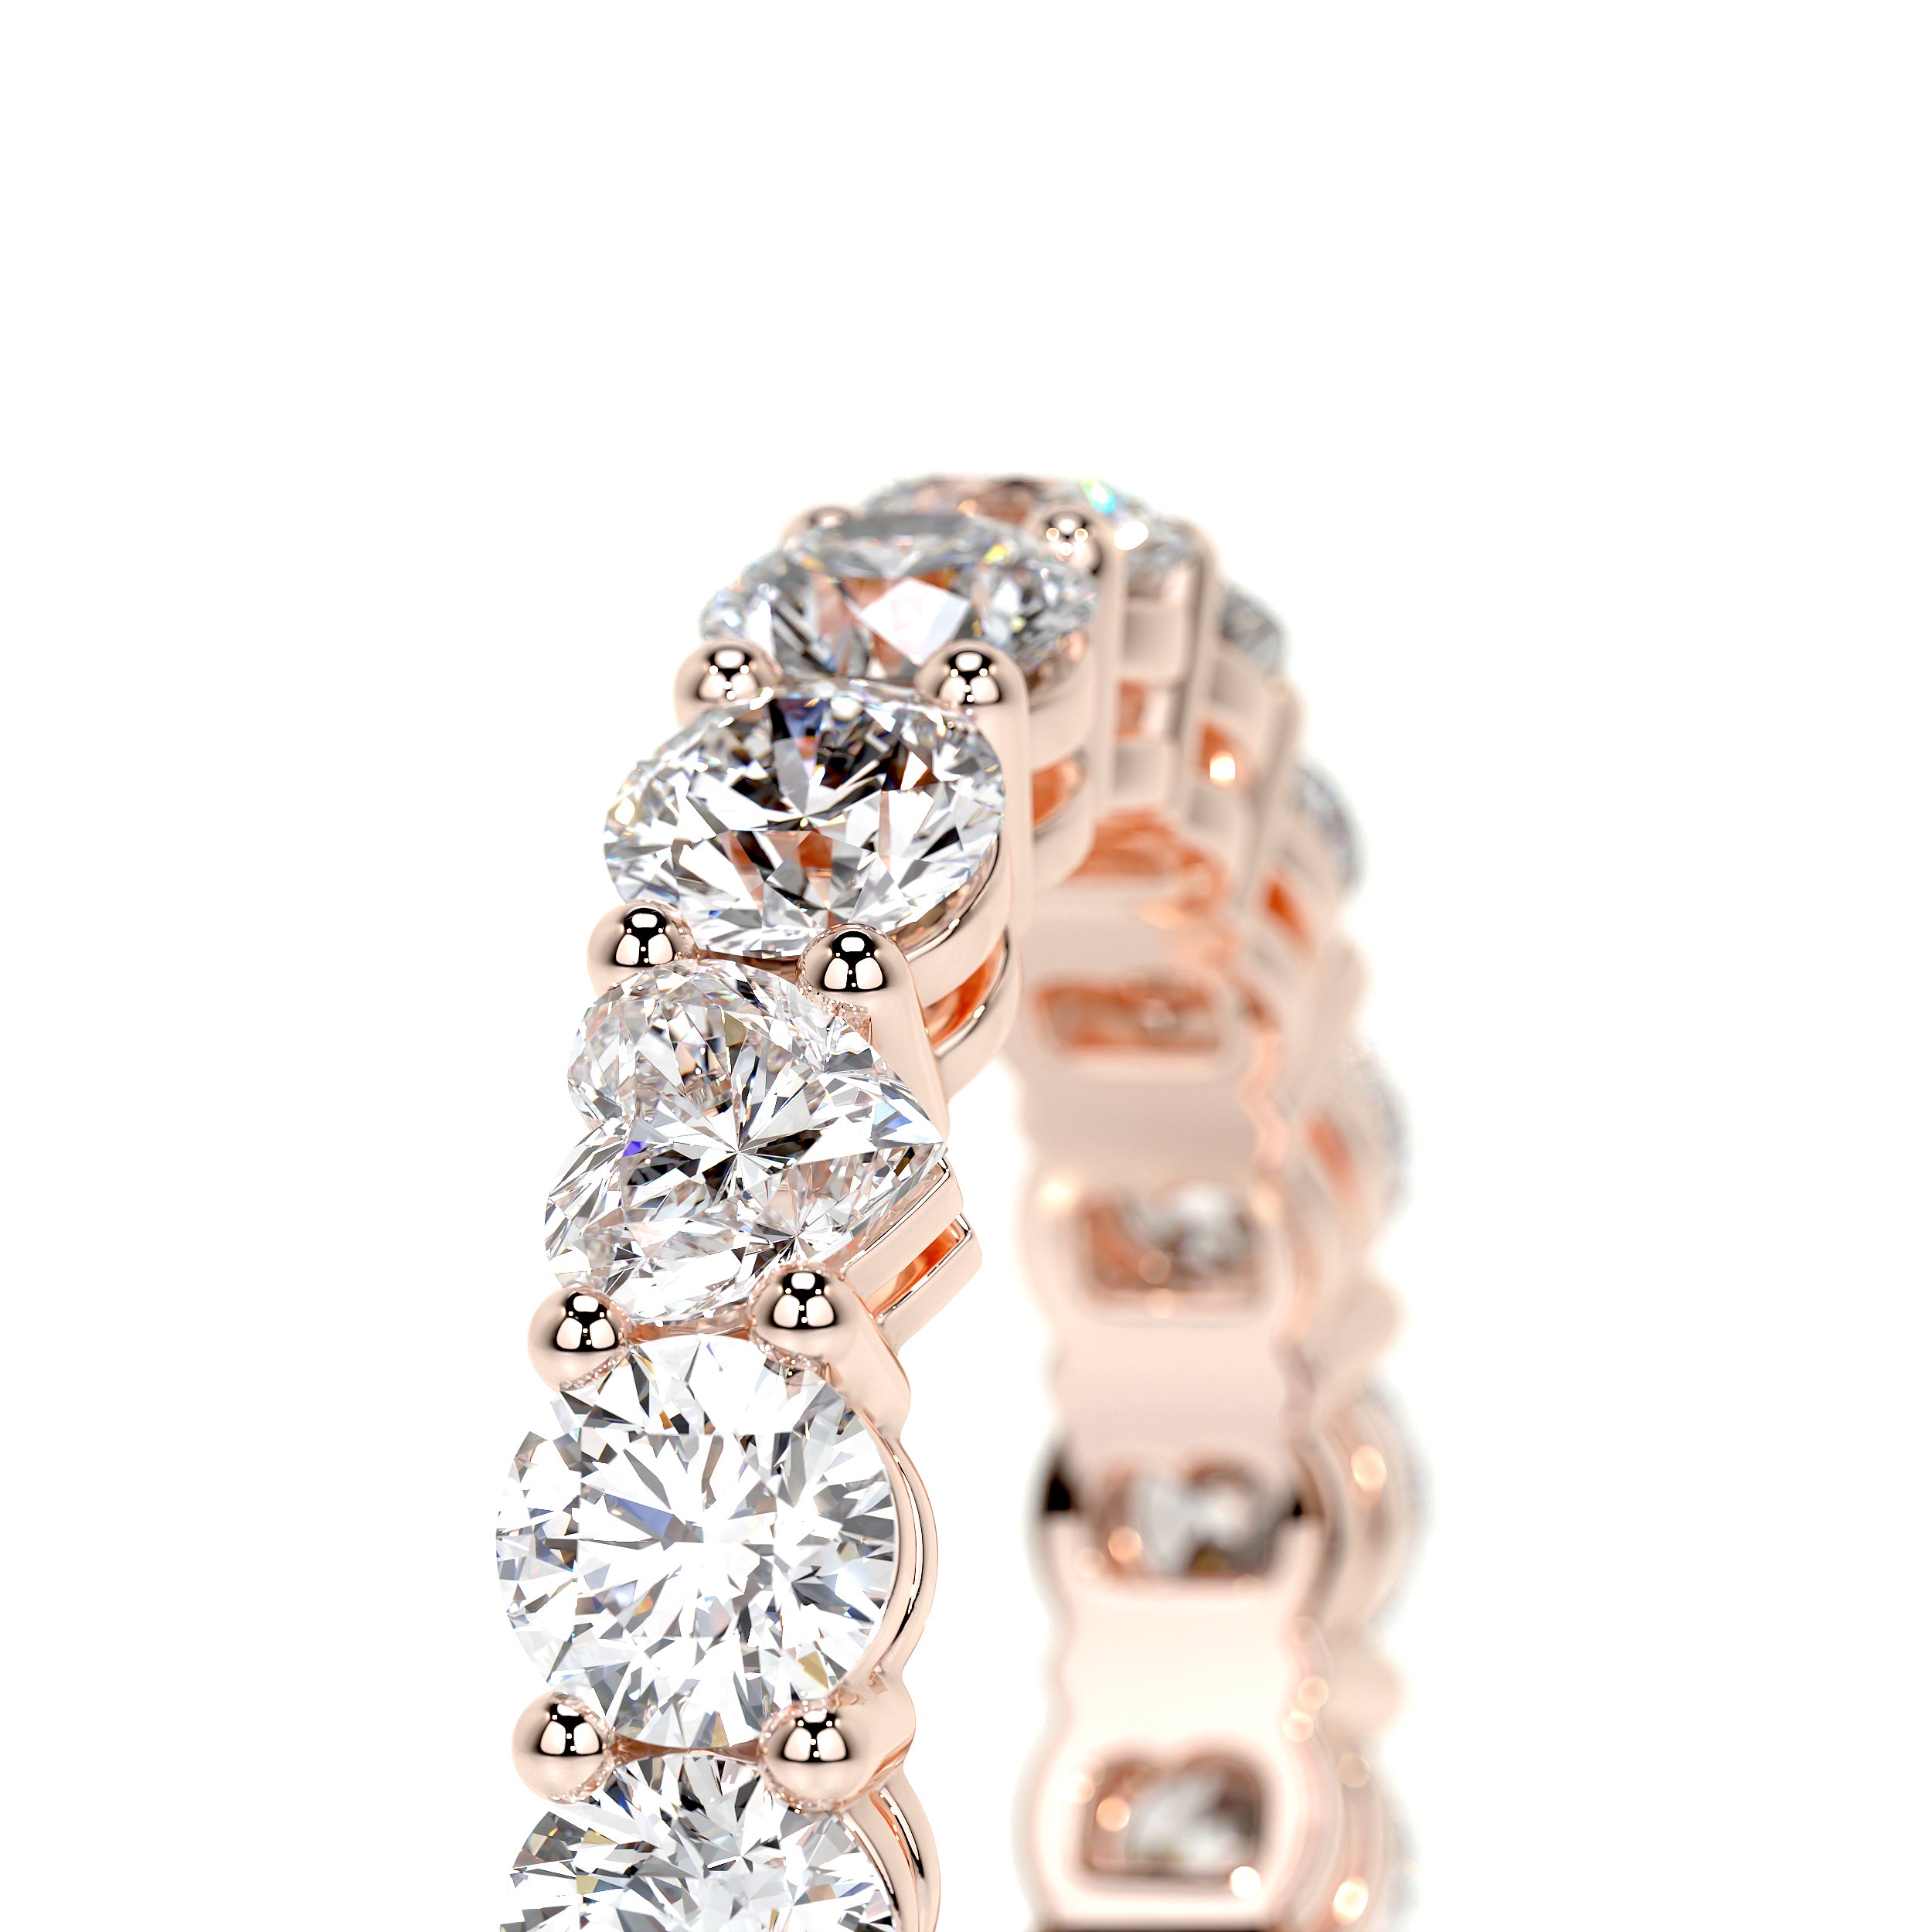 Anne Lab Grown Diamond Wedding Ring -14K Rose Gold